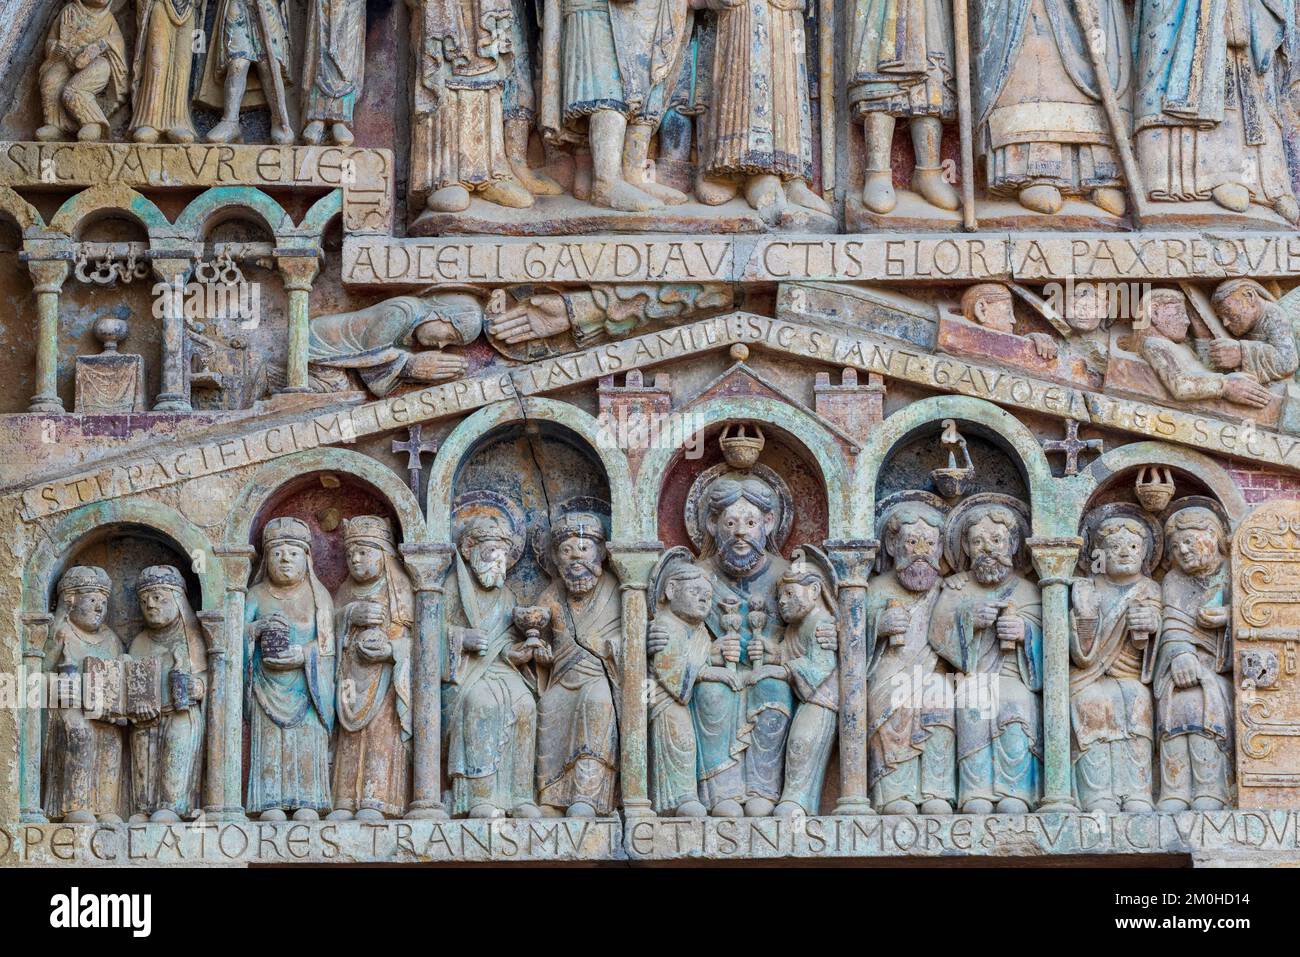 Frankreich, Aveyron, Conques, eines der schönsten Dörfer Frankreichs, Bühne auf dem Weg nach Compostela, Sainte Foy Romanesque Abbey, UNESCO-Weltkulturerbe, Tympanum des letzten Gerichts Stockfoto